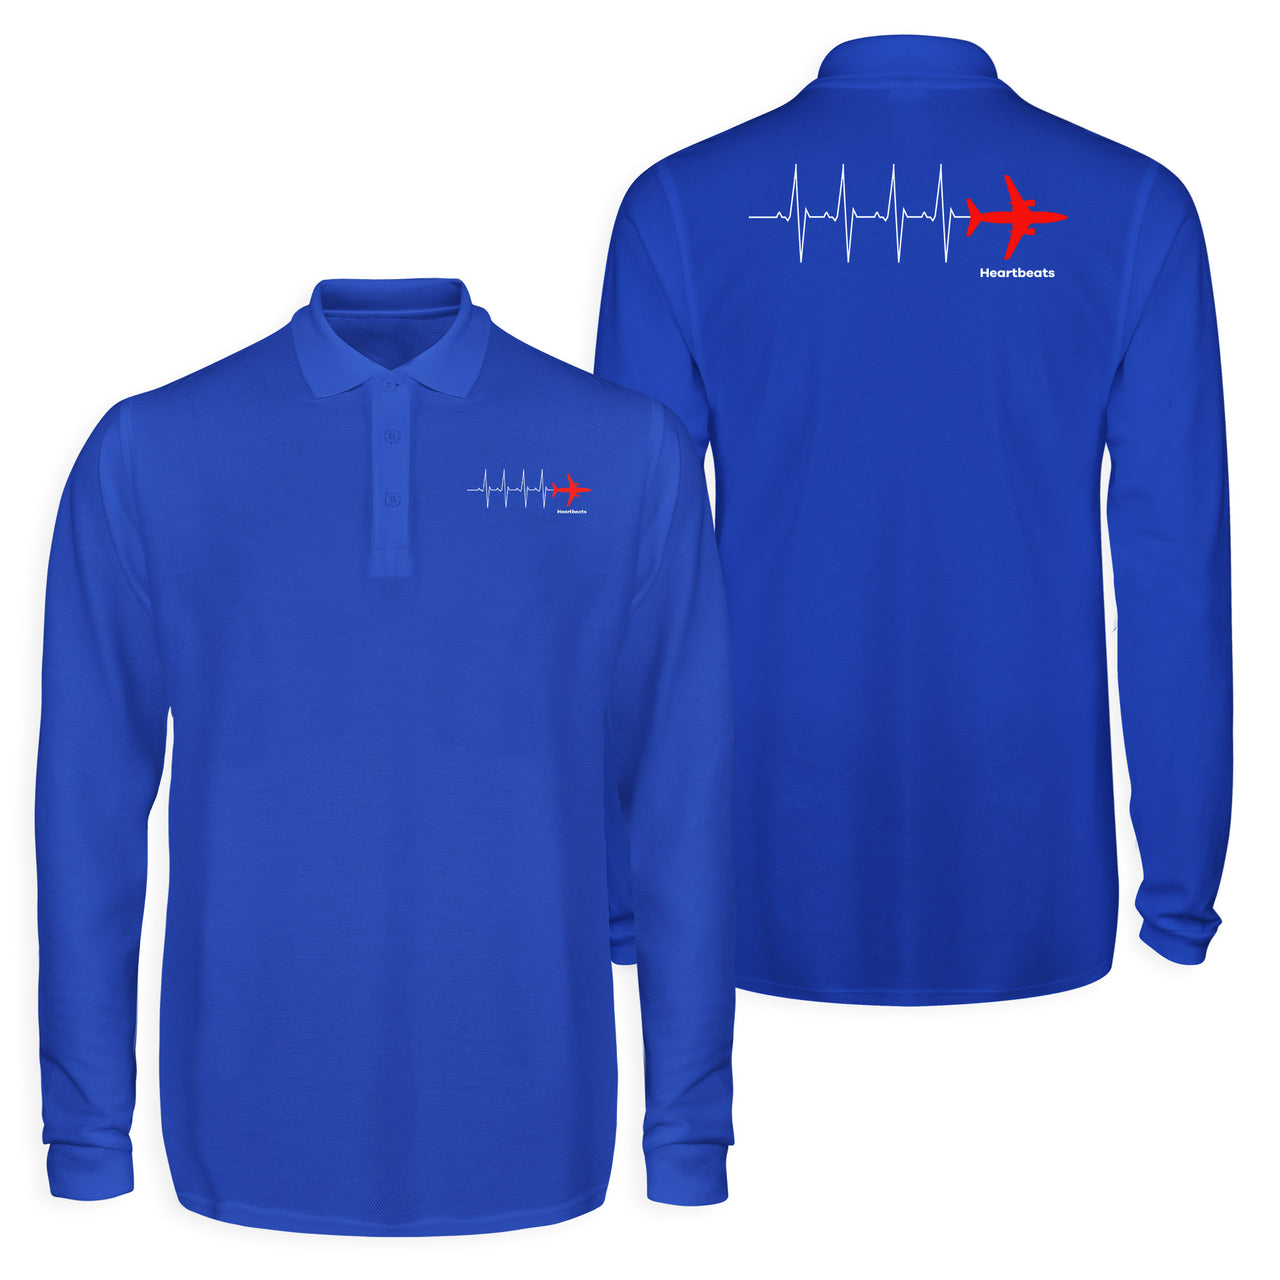 Aviation Heartbeats Designed Long Sleeve Polo T-Shirts (Double-Side)